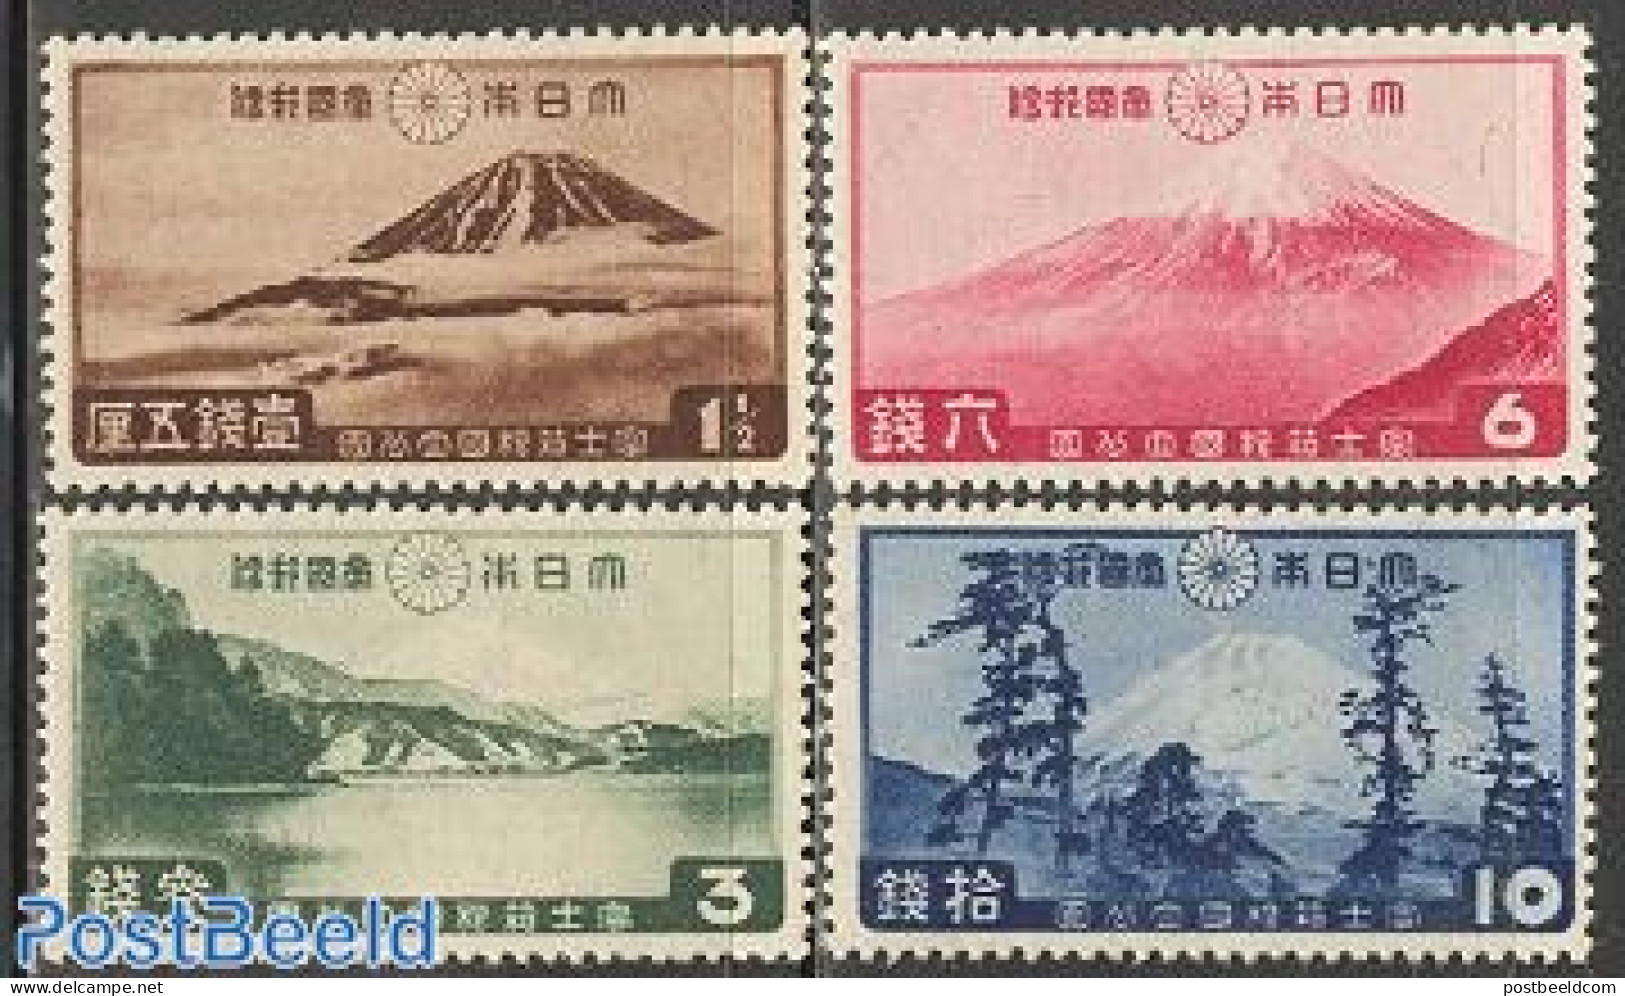 Japan 1936 National Park 4v, Mint NH, Sport - Mountains & Mountain Climbing - Ongebruikt